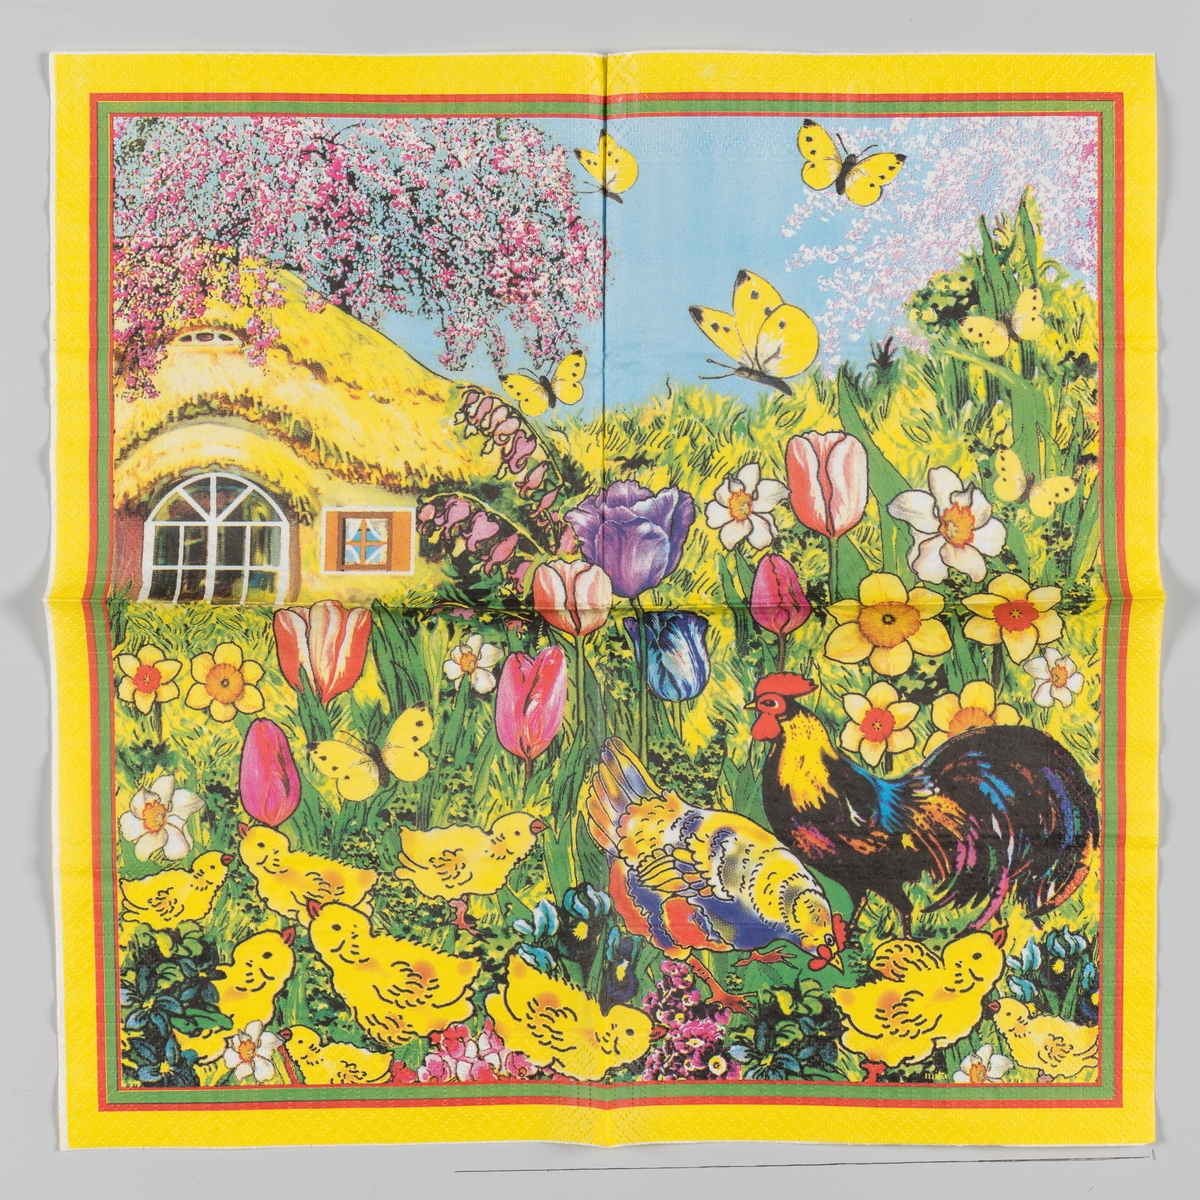 en hane og en hønse sammen med en flokk kyllinger i en hage med påskeliljer, pinseliljer, tulipaner, stemorsblomst og andre vårblomster. I bakgrunnen et hus med stråtak, fruktreer i blomst og gule sommerfugler på en lysblå himmel. Røde, grønne og gule kantstriper